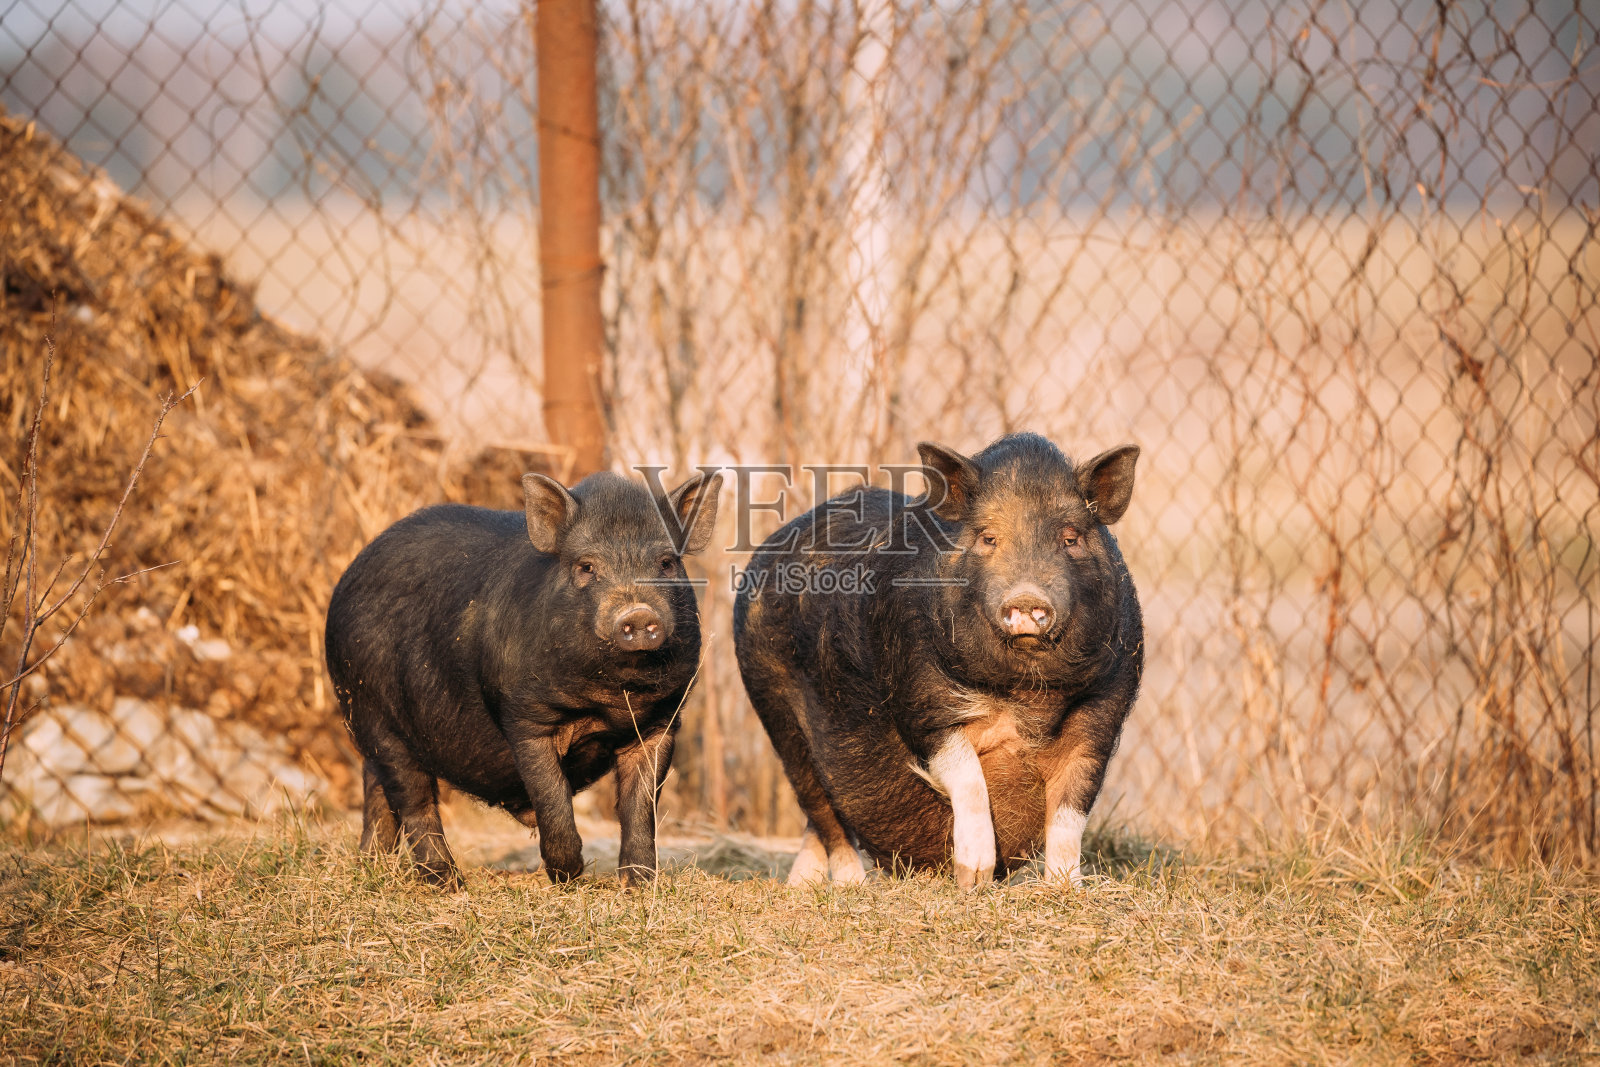 两只猪在农场院子里摆姿势。养猪业就是饲养家养的猪。它是畜牧业的一个分支照片摄影图片